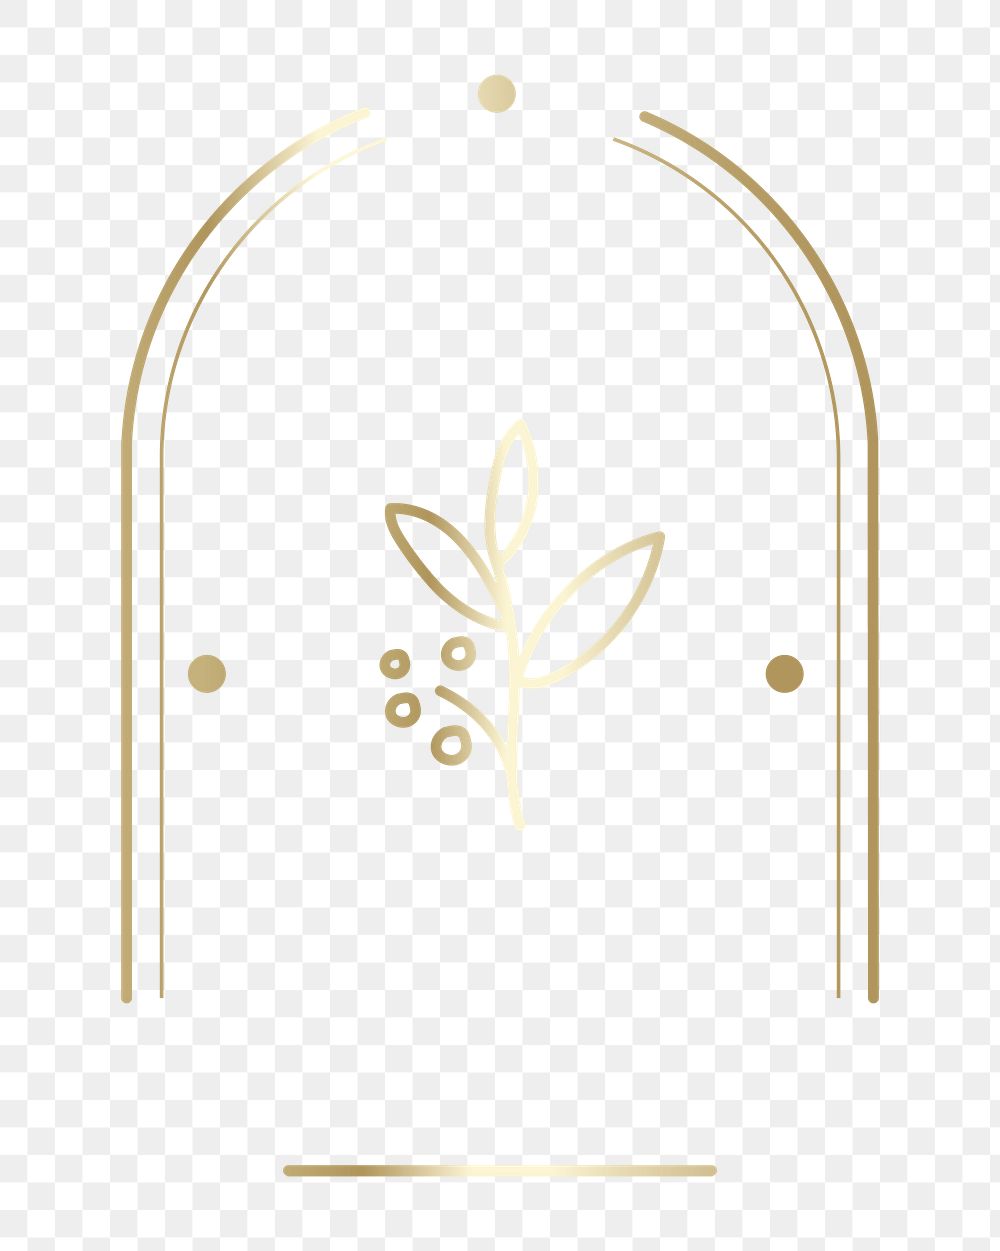 Gold botanical badge png element, transparent background